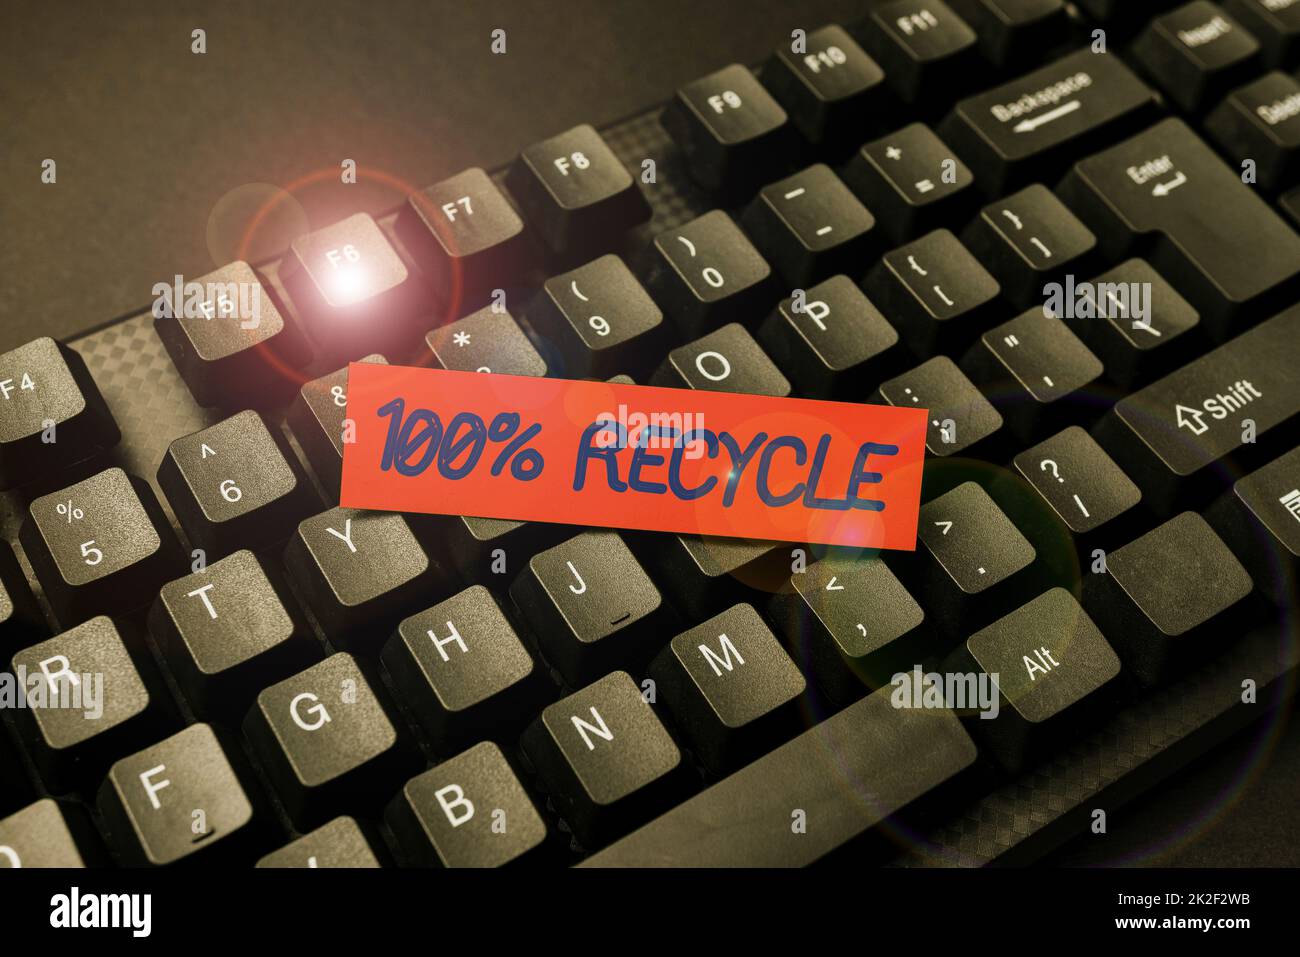 Scrittura visualizzazione testo 100% Recycle. Vetrina di business Set di biodegradabili, senza BPA e compostabili riciclabili retipizzazione vecchi dati foglio di lavoro, abstract typing elenchi di prenotazione online Foto Stock